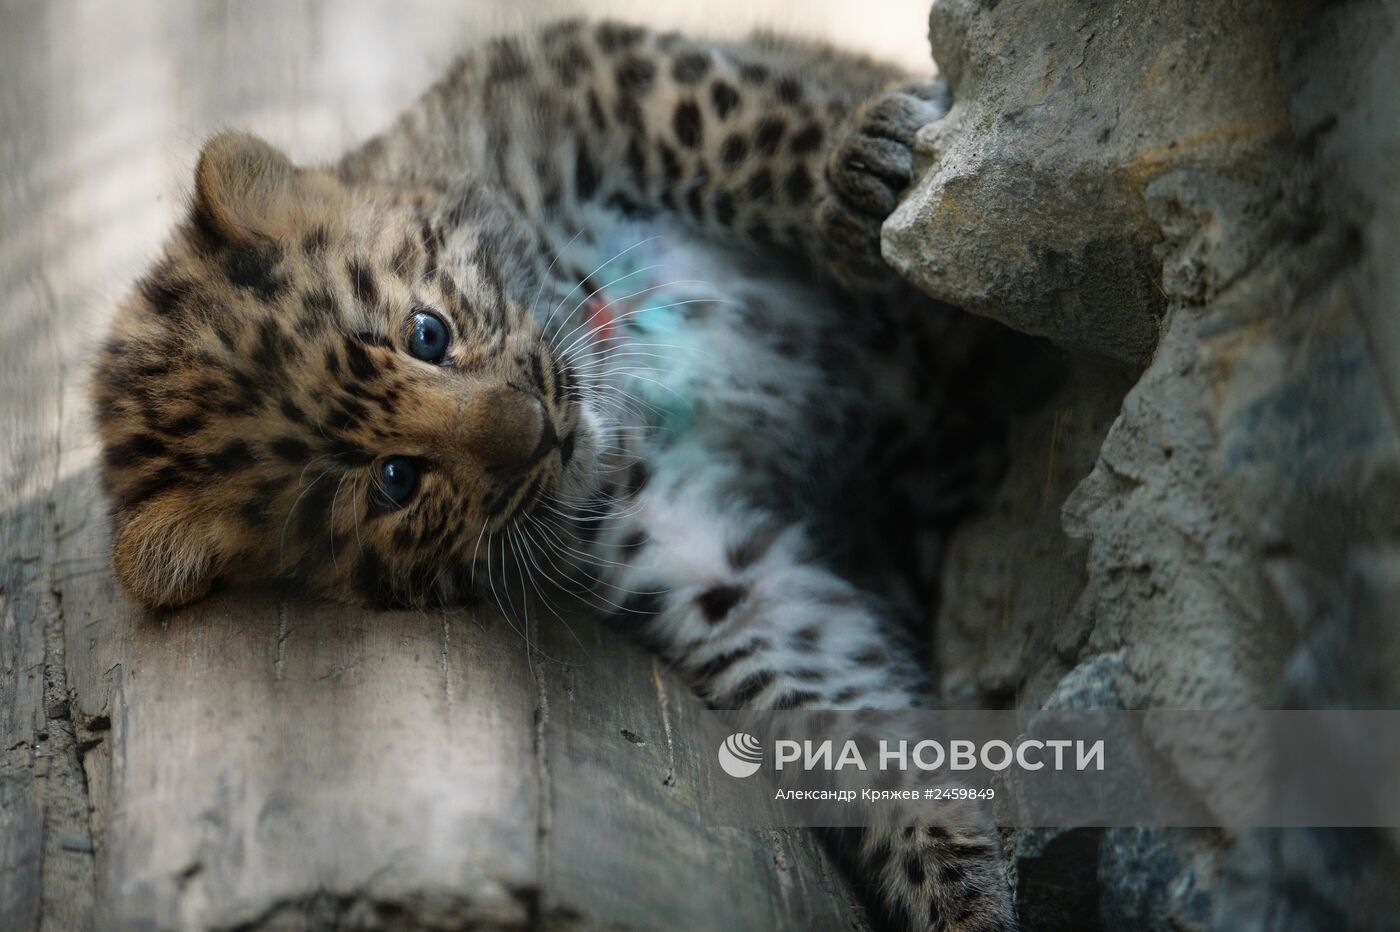 Детеныш дальневосточного леопарда родился в Новосибирске